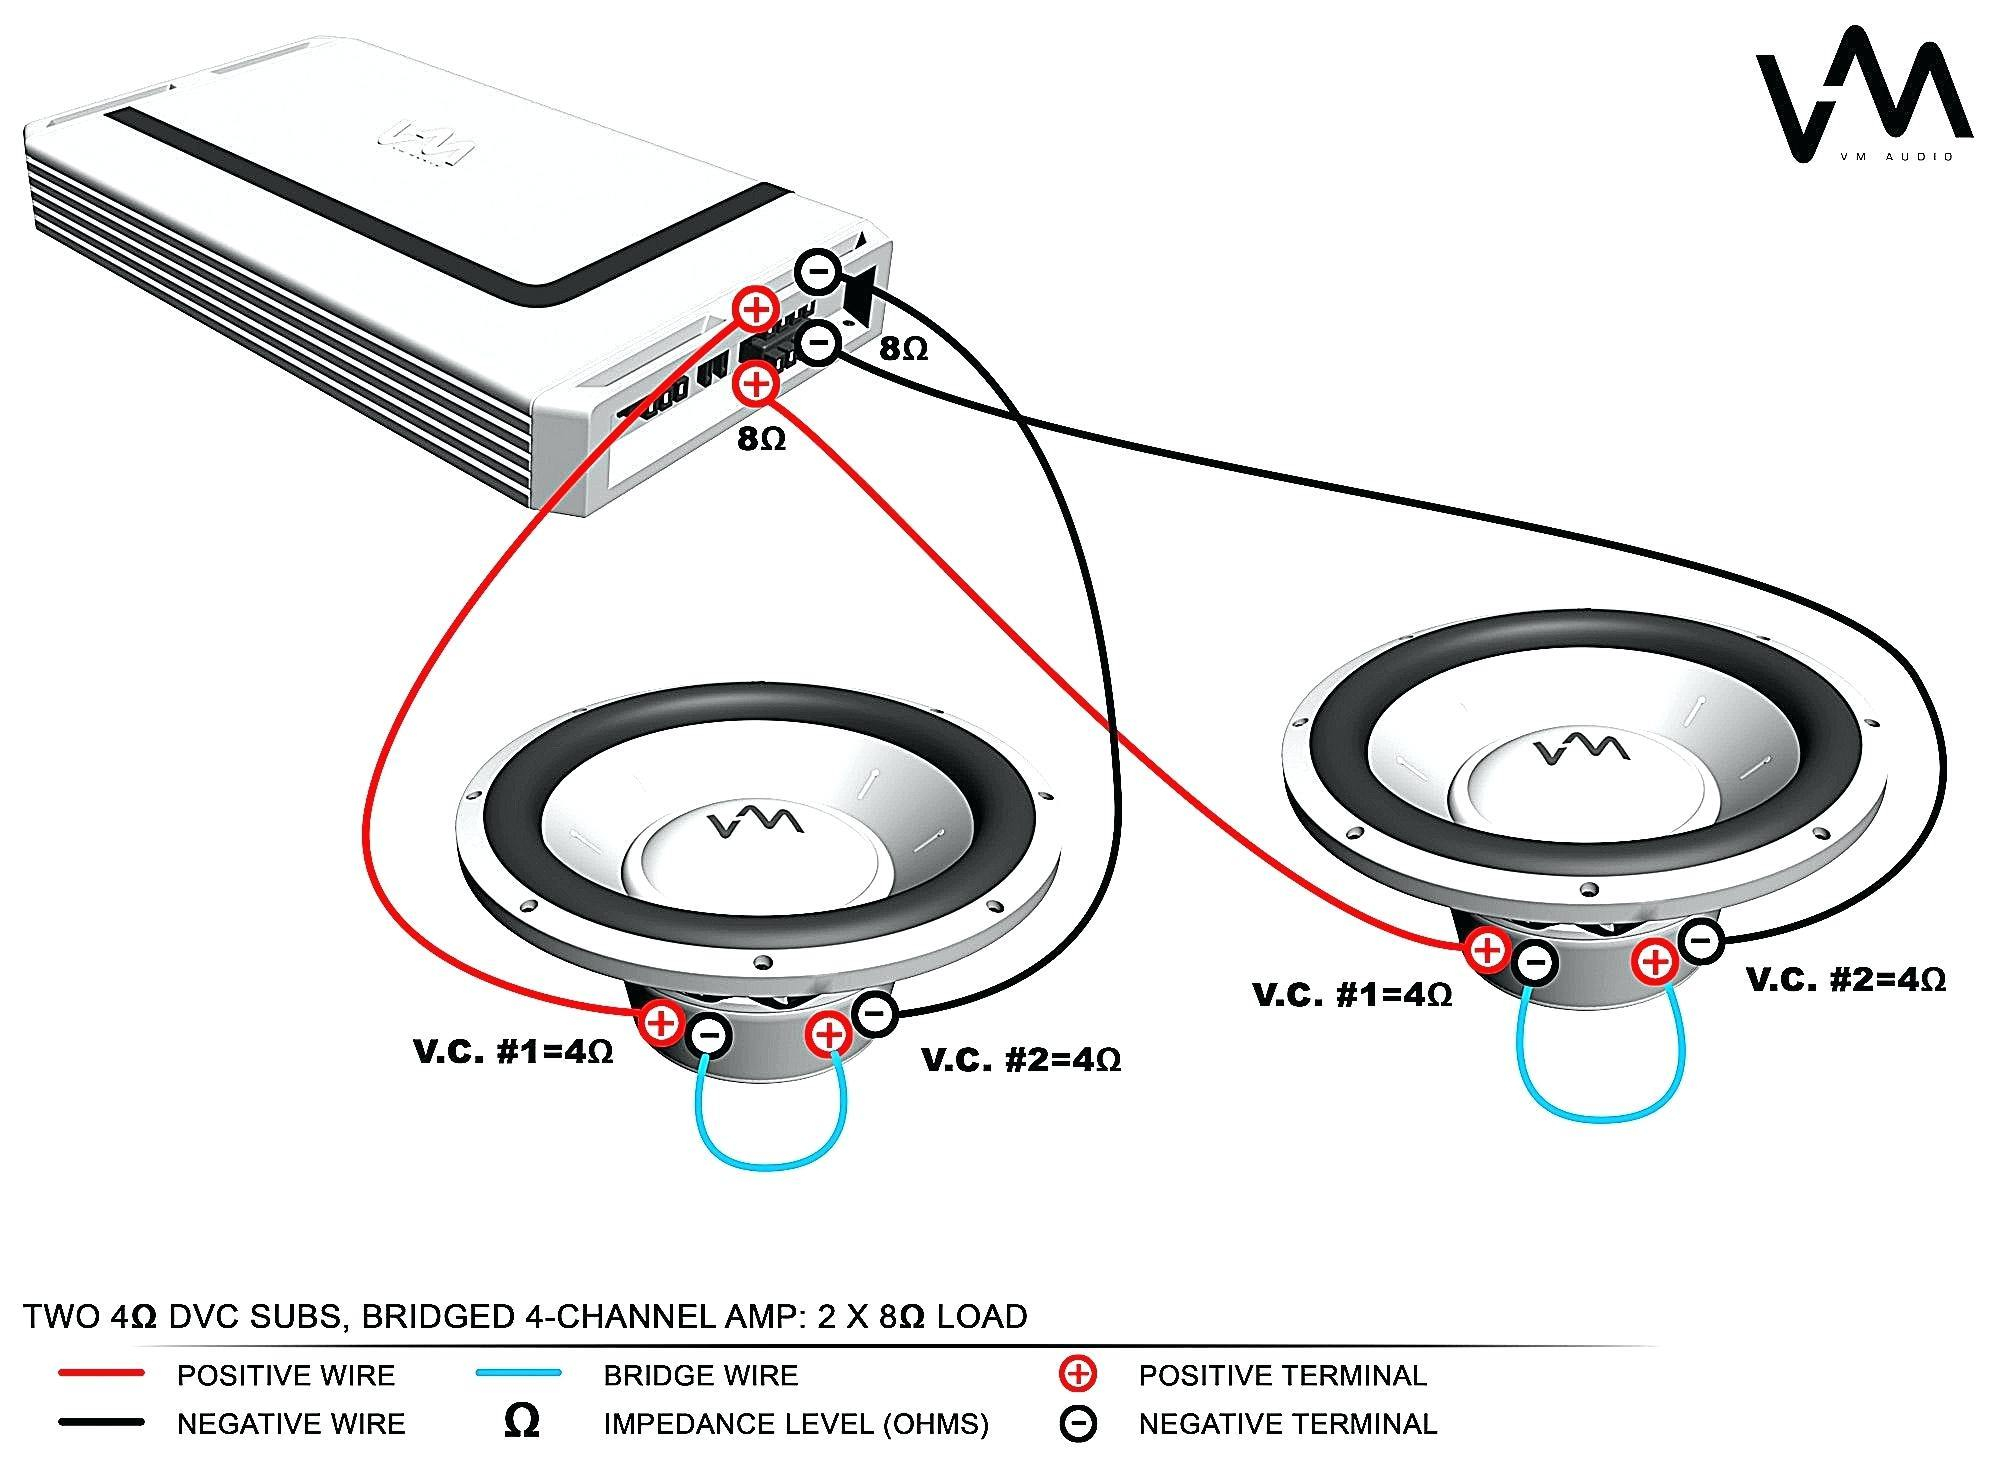 Kicker Subwoofer Wiring Diagram | Wiring Diagram - Kicker Subwoofer Wiring Diagram